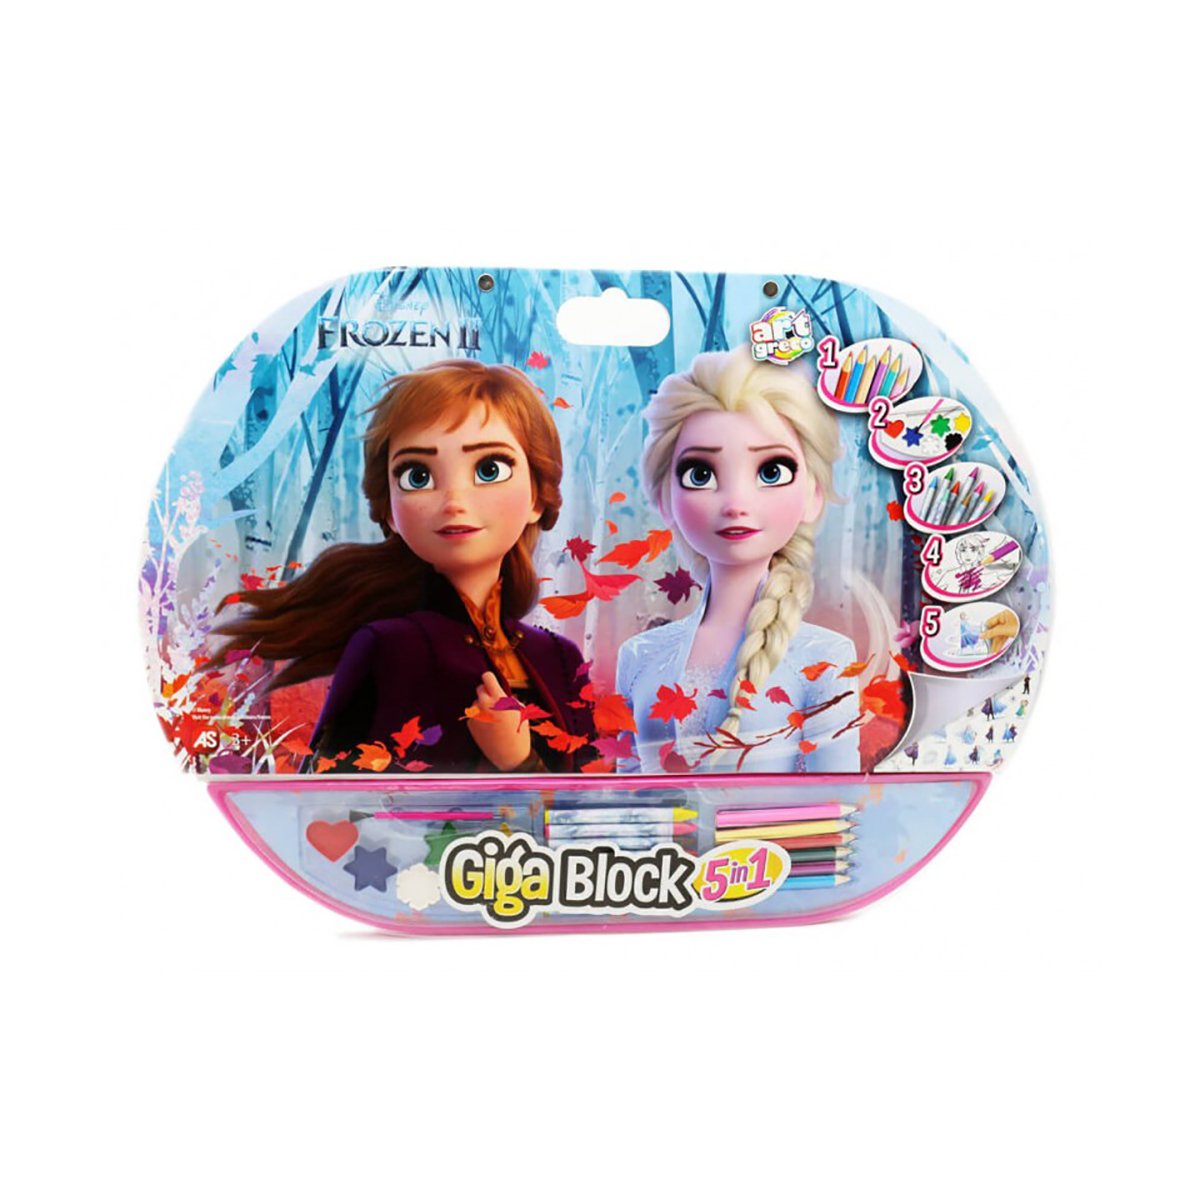 Set desen si accesorii Disney Frozen 2 Giga Block 5 in 1 Accesorii